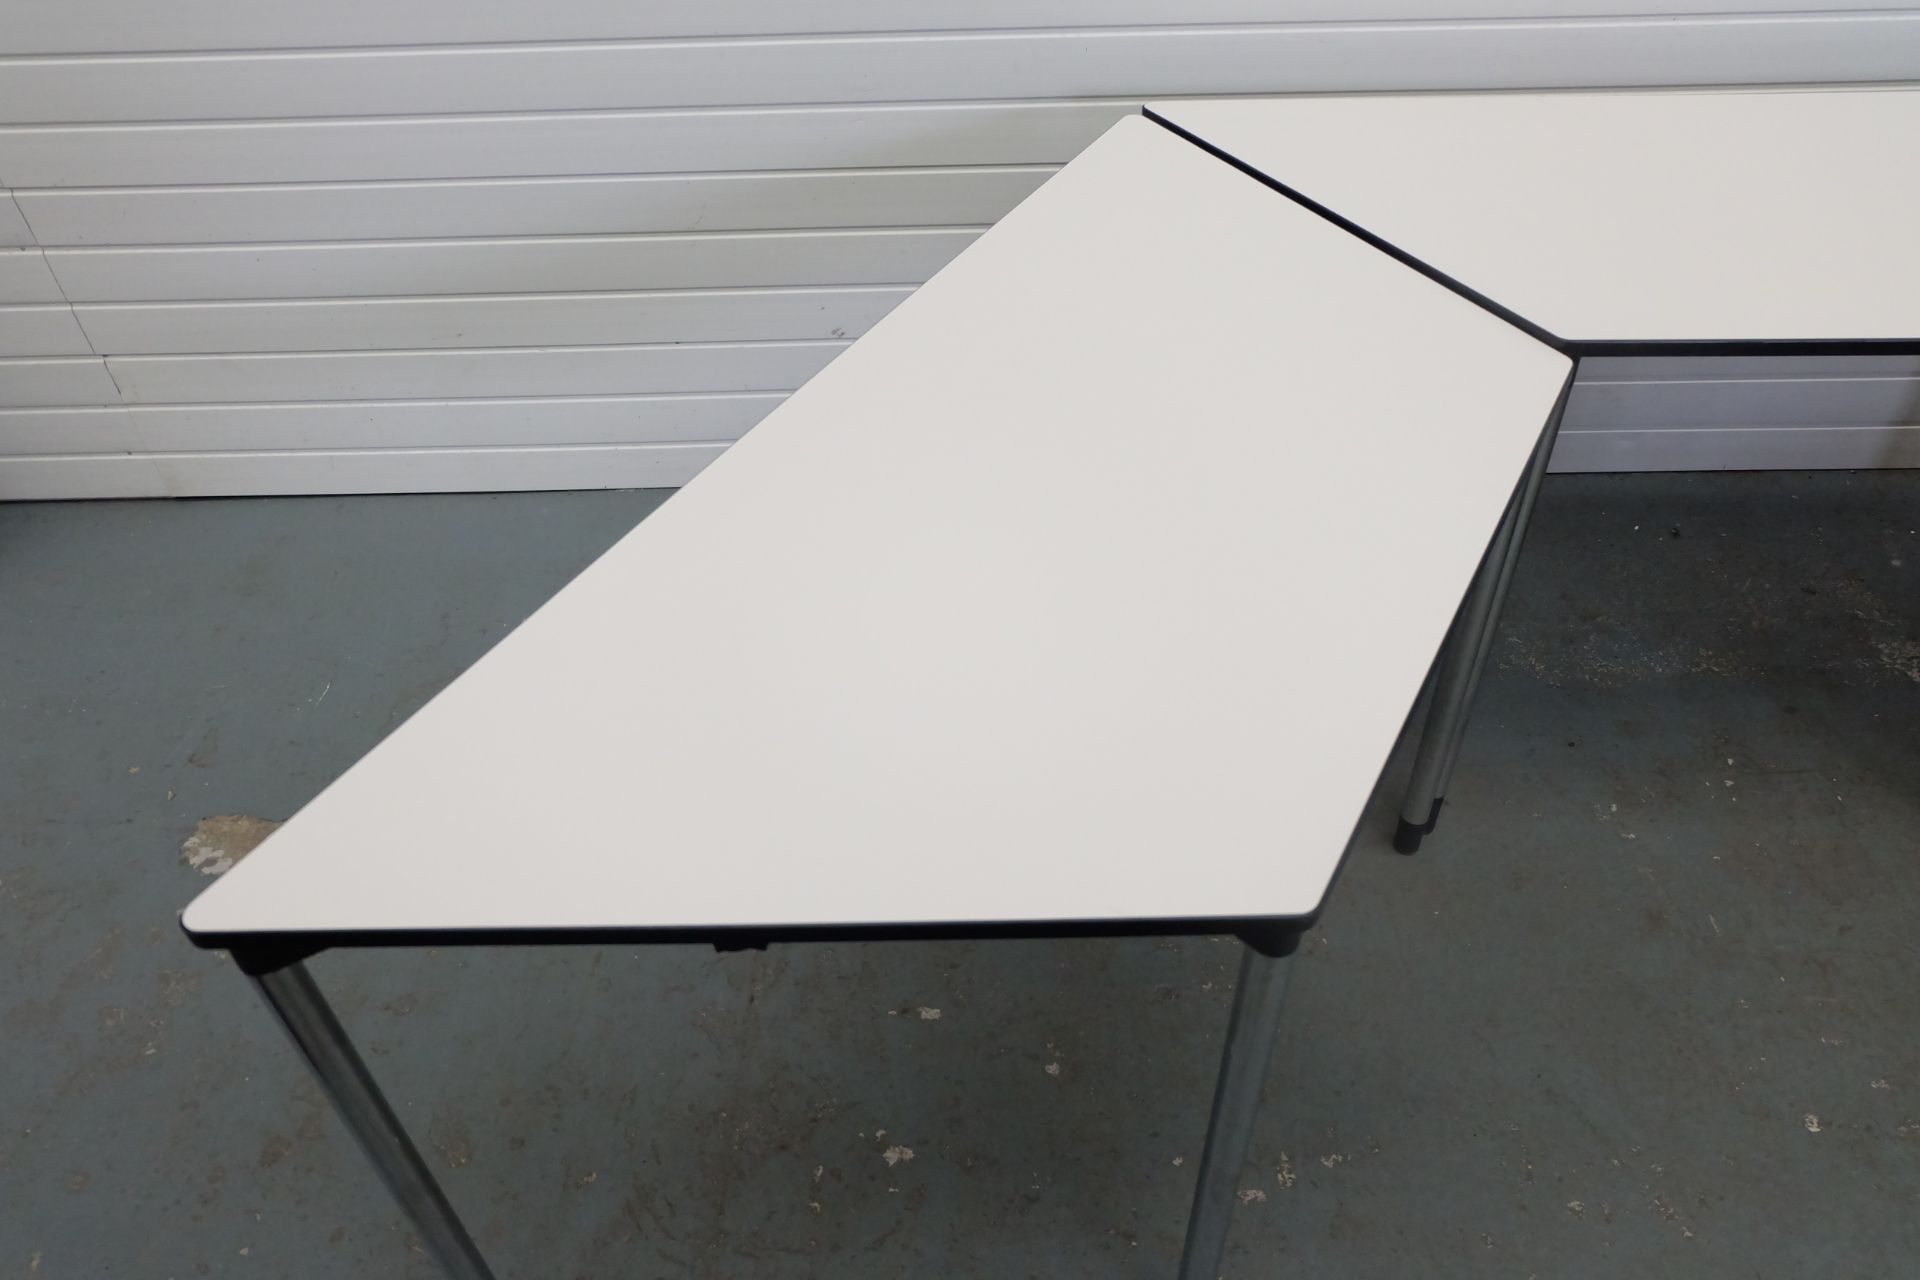 3 x Trapeziod Shape Desks With Metal Legs. Size 1470mm x 650mm x 750mm High. - Bild 2 aus 4